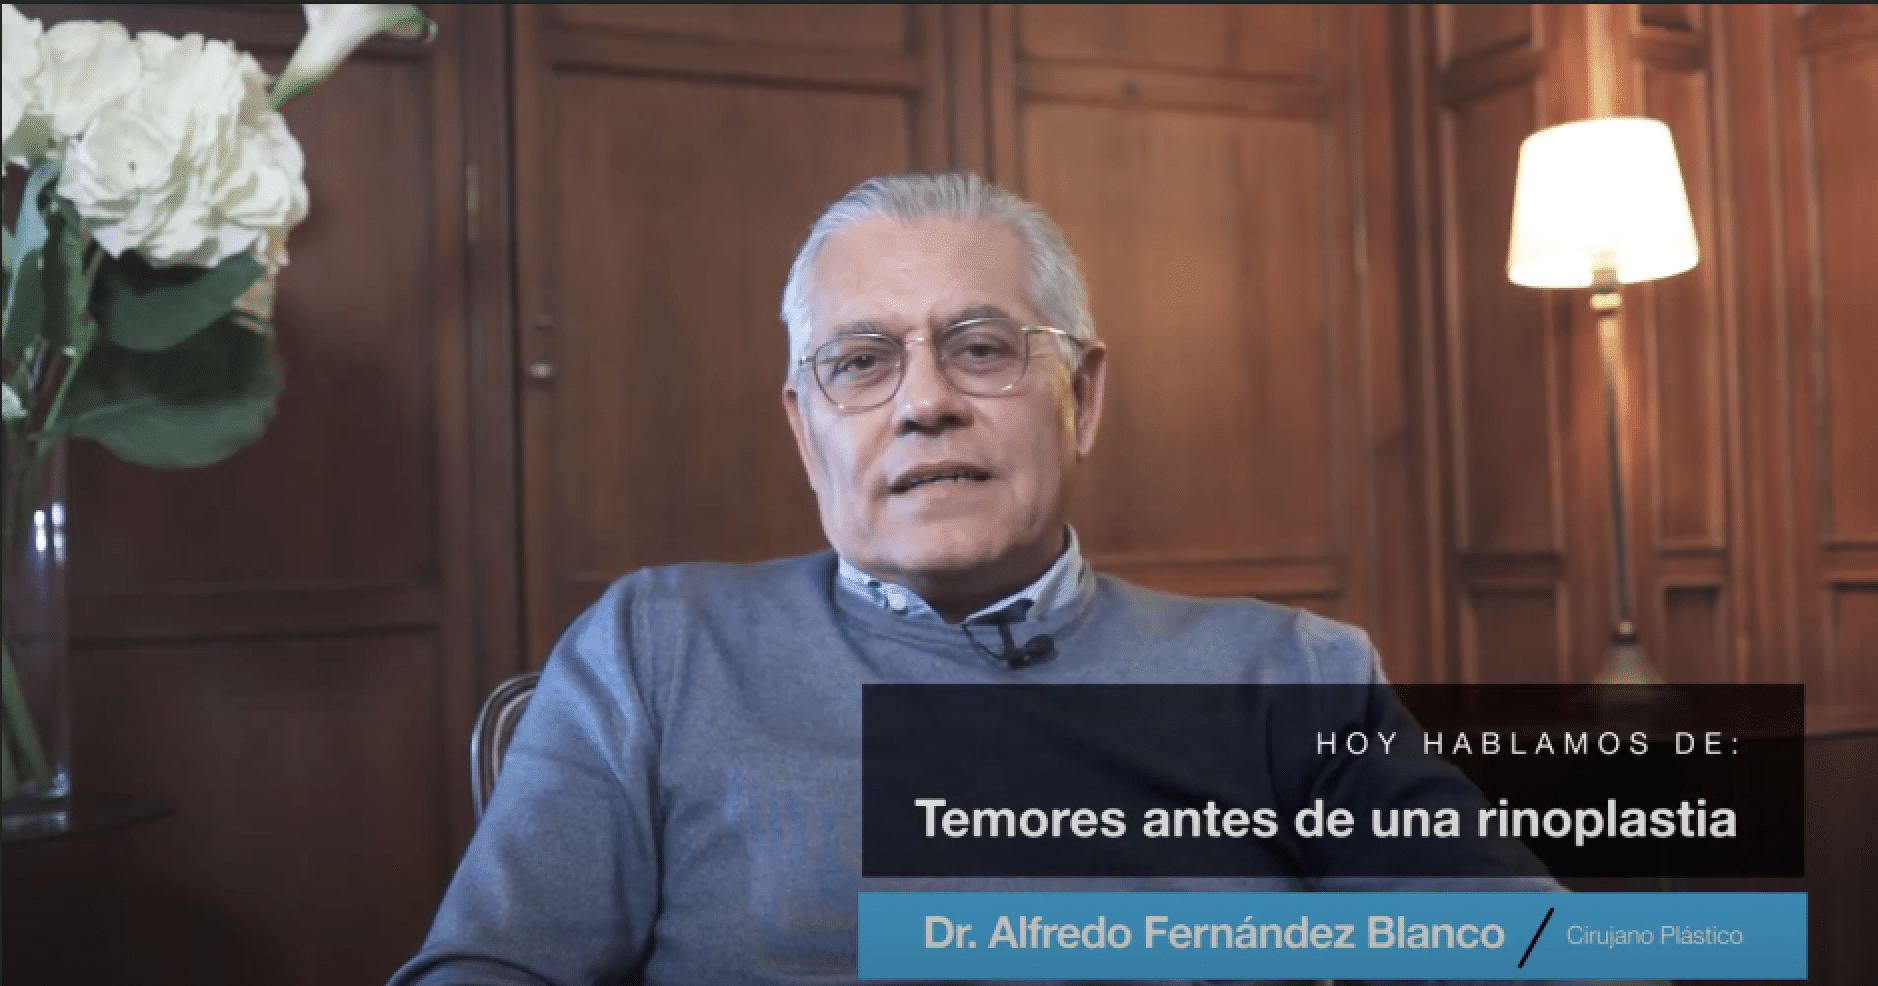 Videoblog acerca de los temores antes de una rinoplastia por el Dr. Fernández Blanco